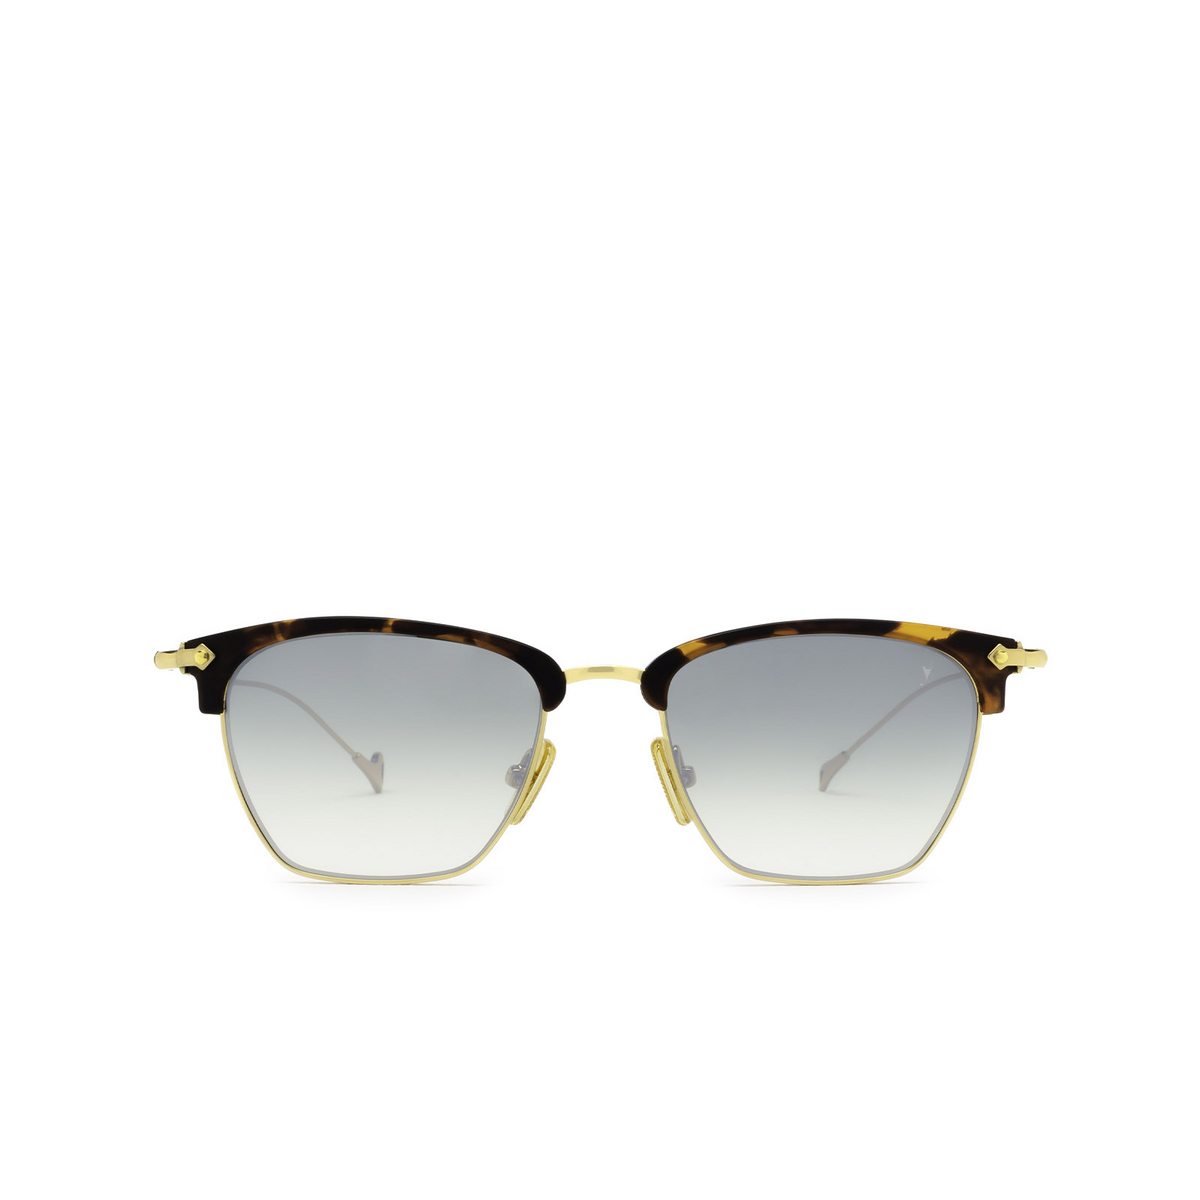 Eyepetizer® Irregular Sunglasses: Don color Avana Matt C.G-4-25F - front view.